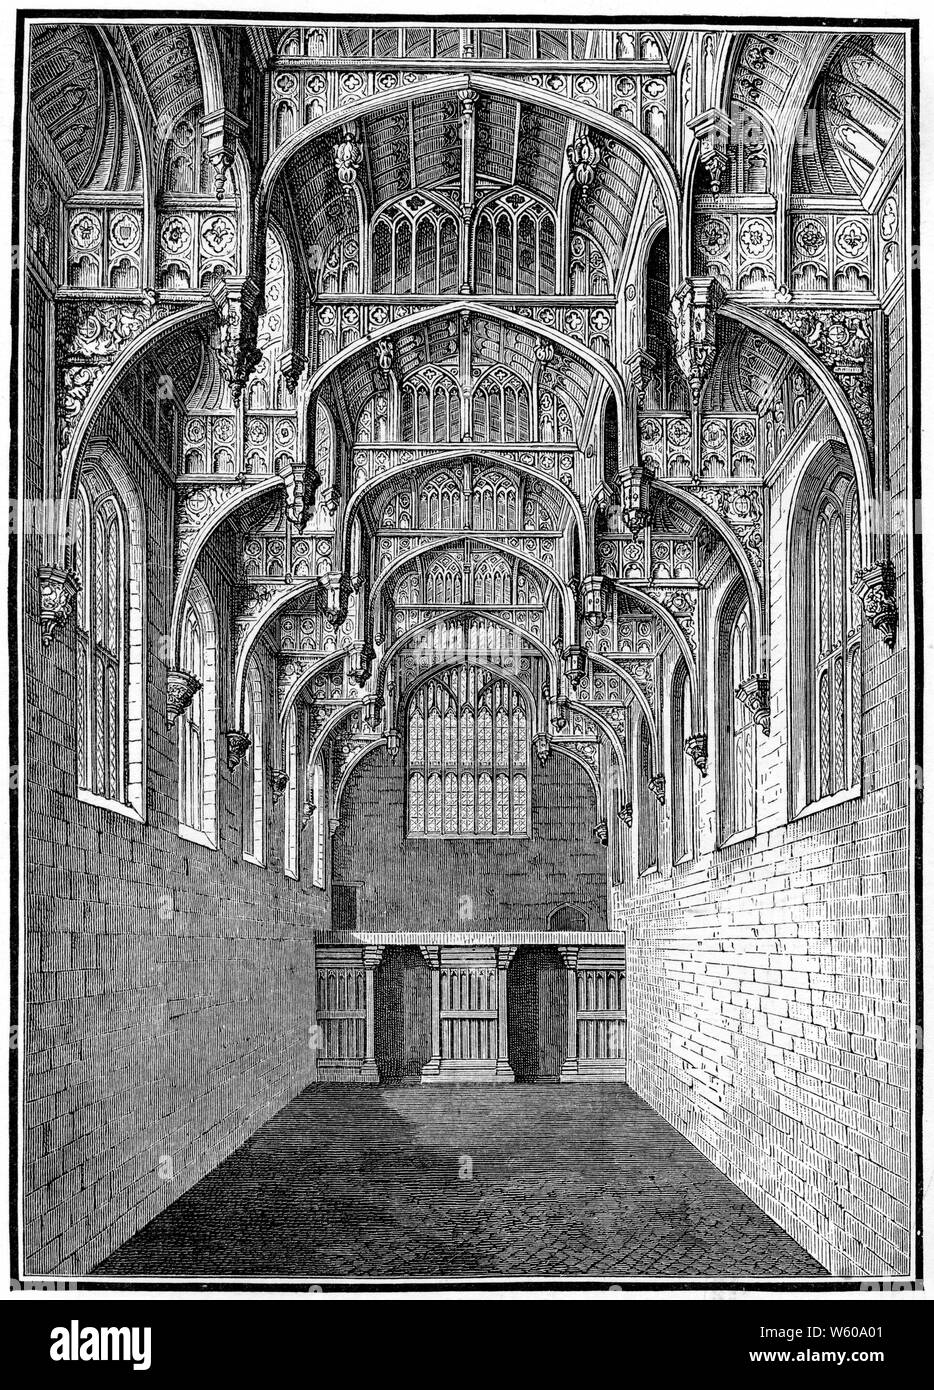 Gran Salón, Hampton Court Palace, c1900. Enrique VIII añadió el Gran Salón entre 1532 y 1535. El Gran Salón tiene un techo de vigas de martillo tallado y durante la época de los Tudor, esta era la sala más importante del palacio. Foto de stock